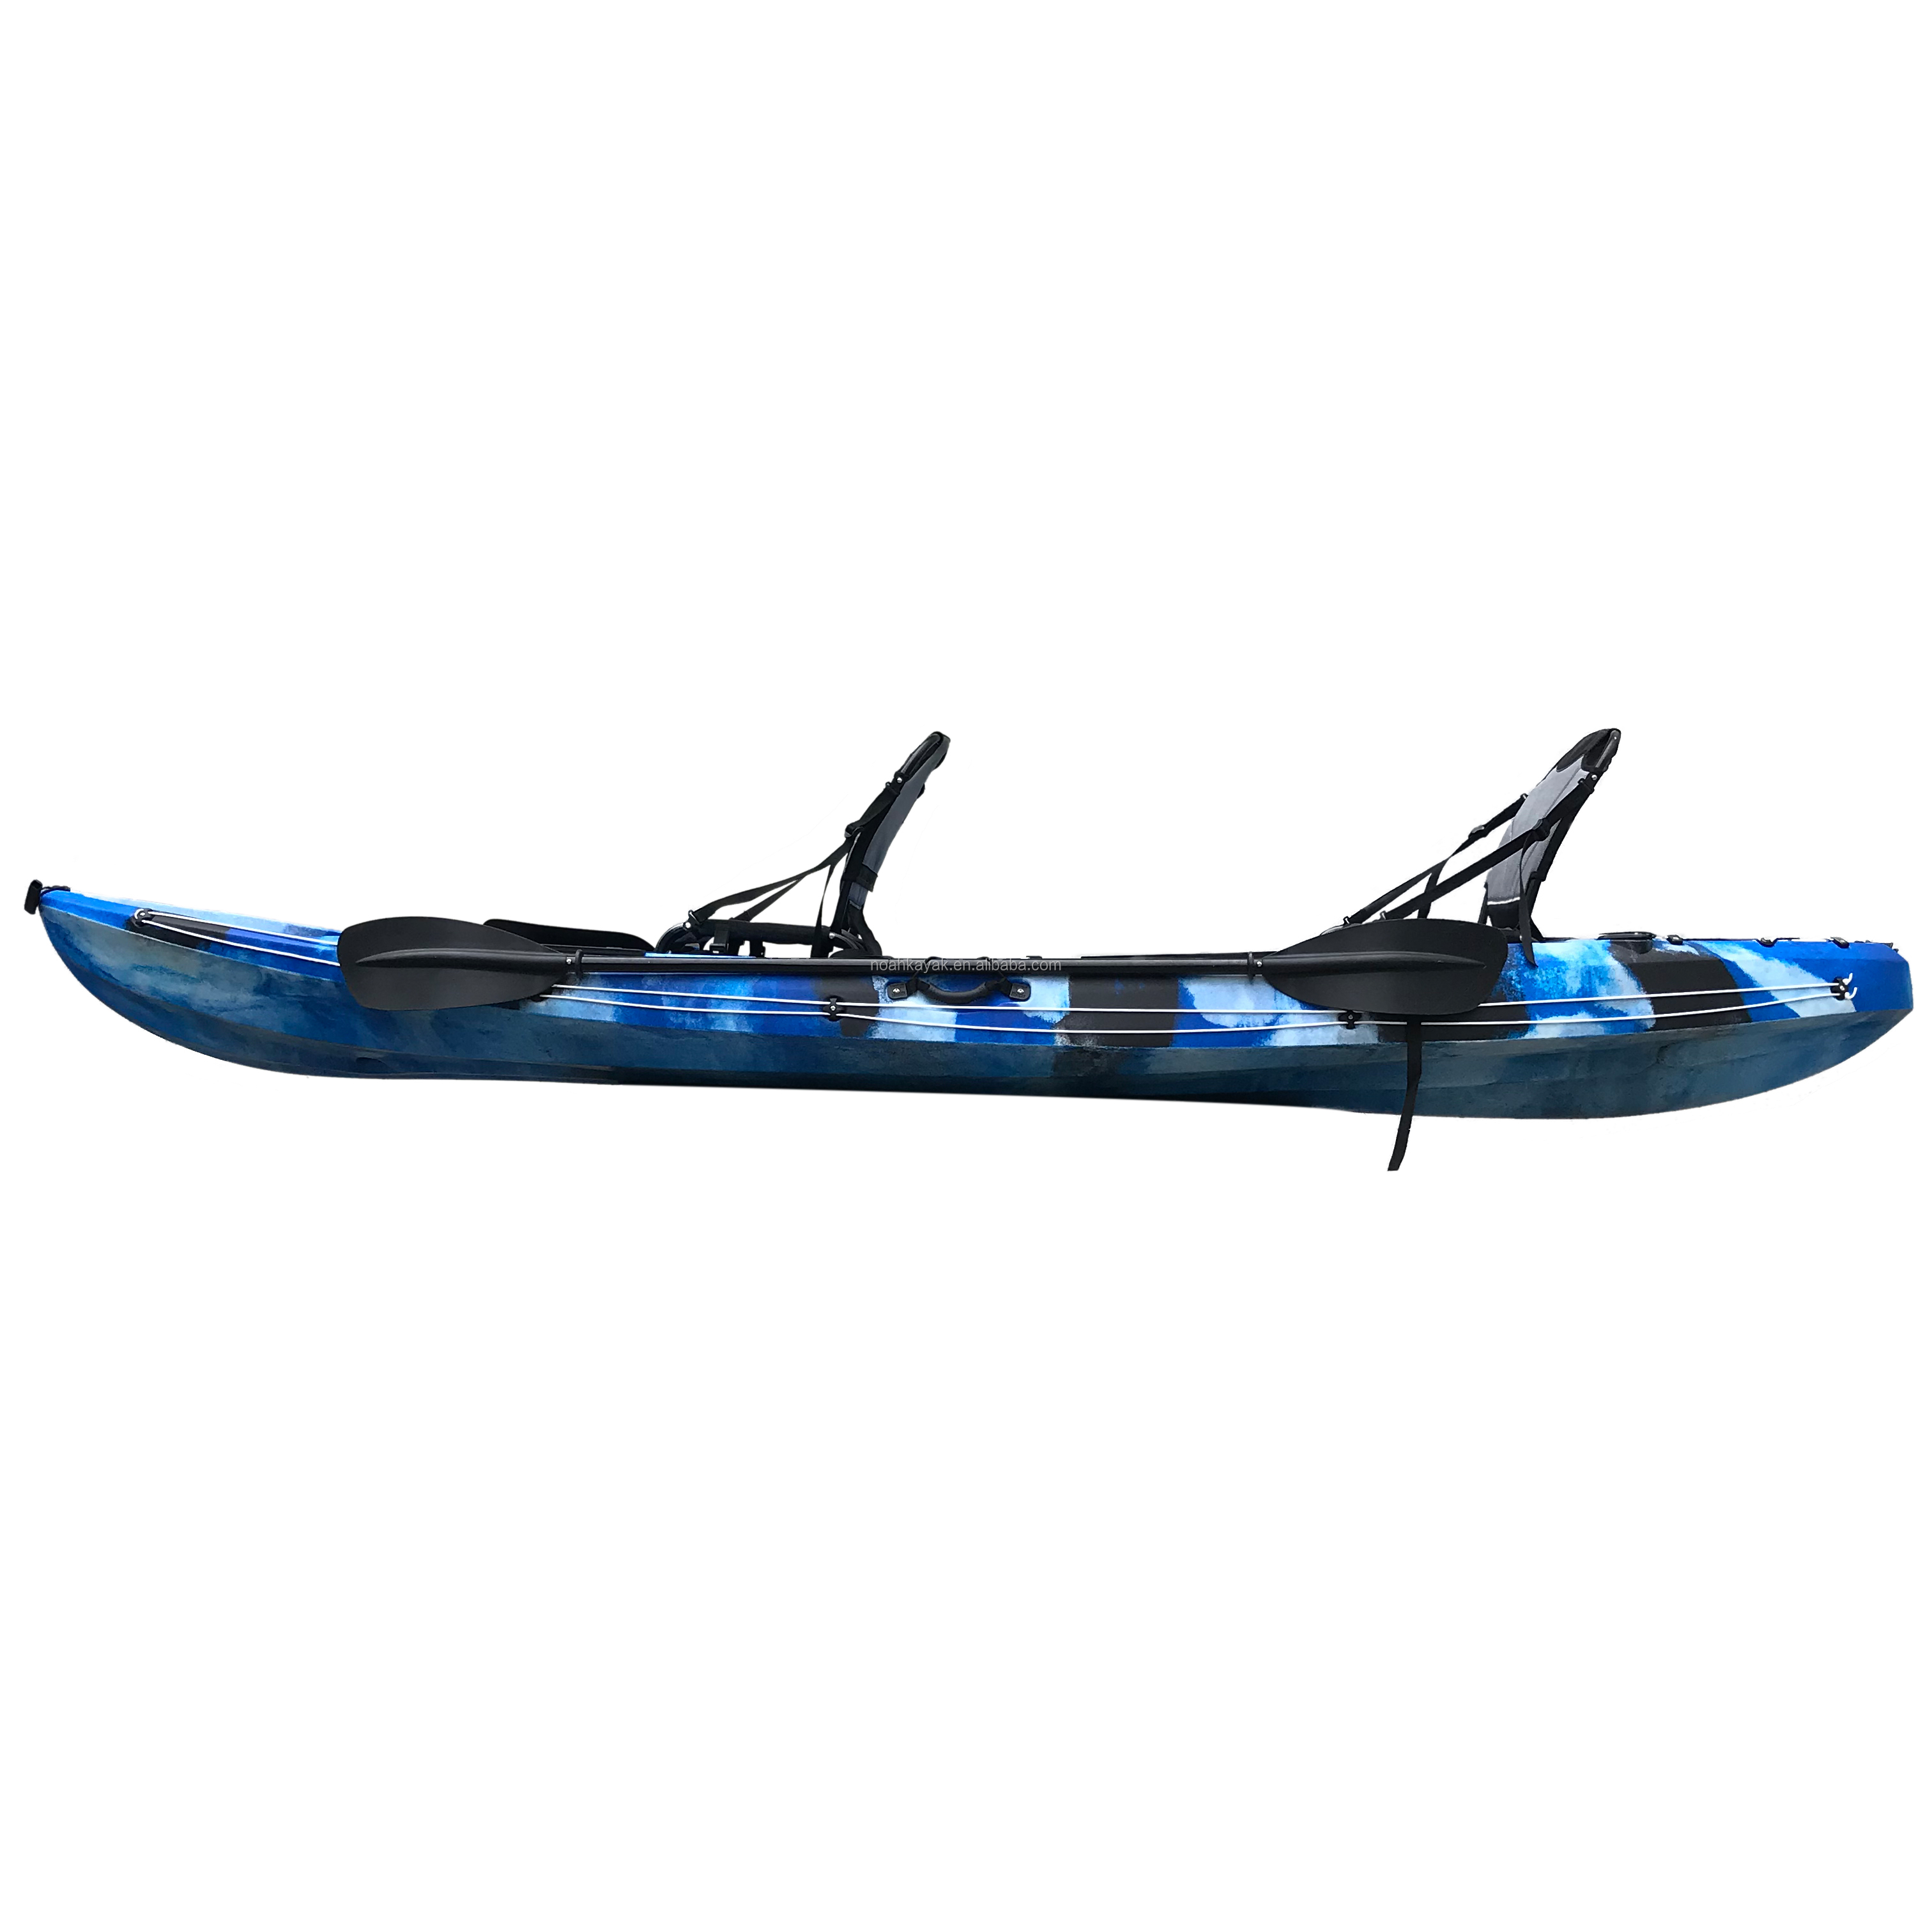 Kayak memancing ganda duduk di atas kayak